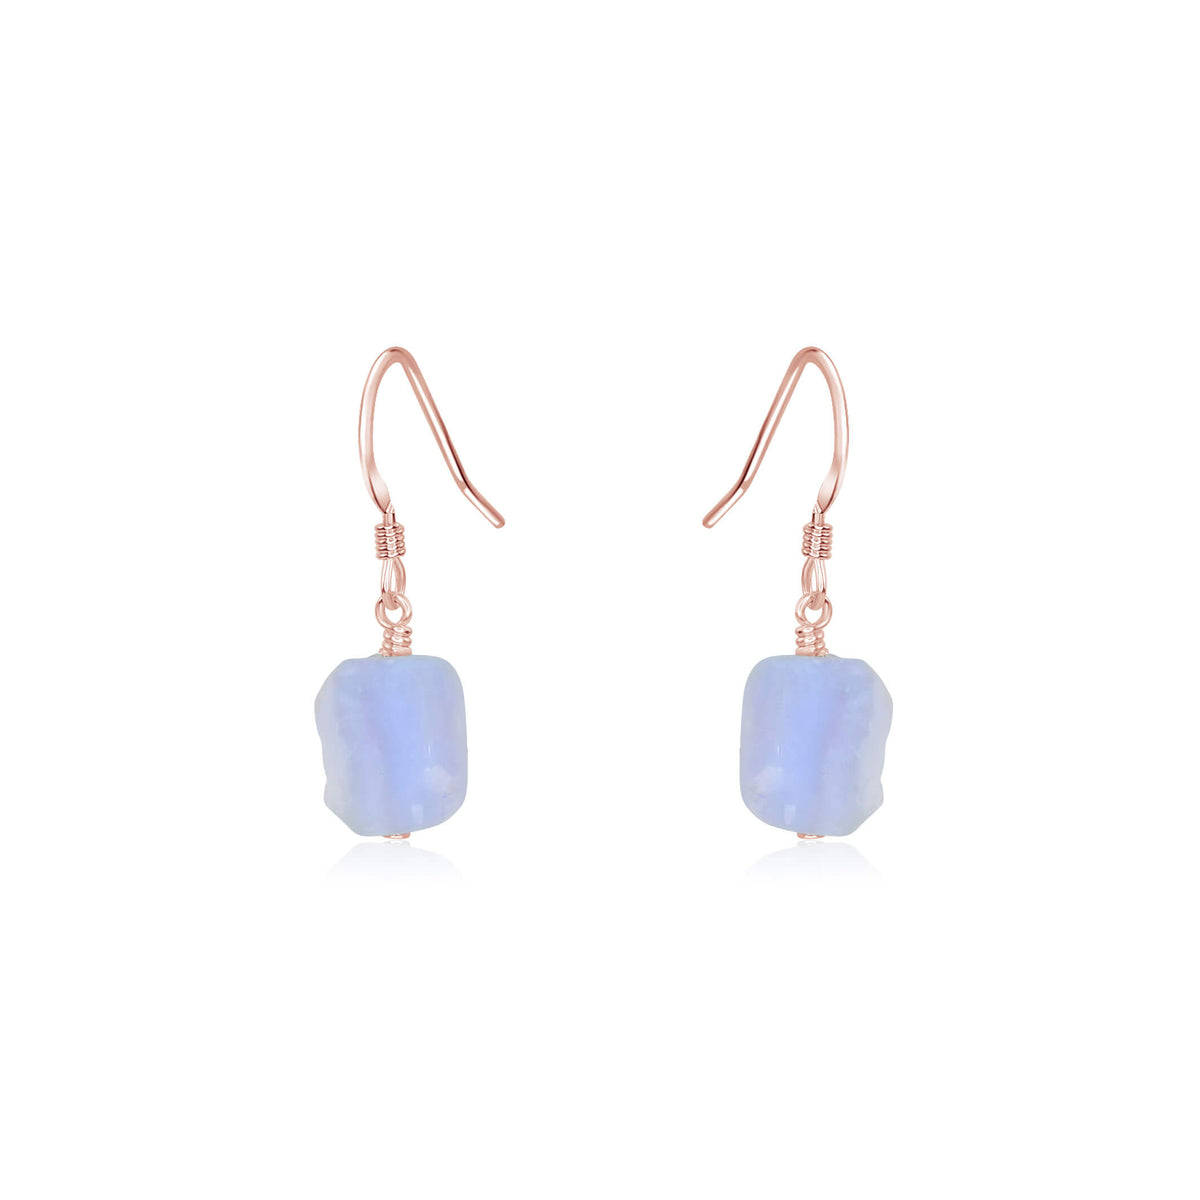 Raw Nugget Earrings - Blue Lace Agate - 14K Rose Gold Fill - Luna Tide Handmade Jewellery